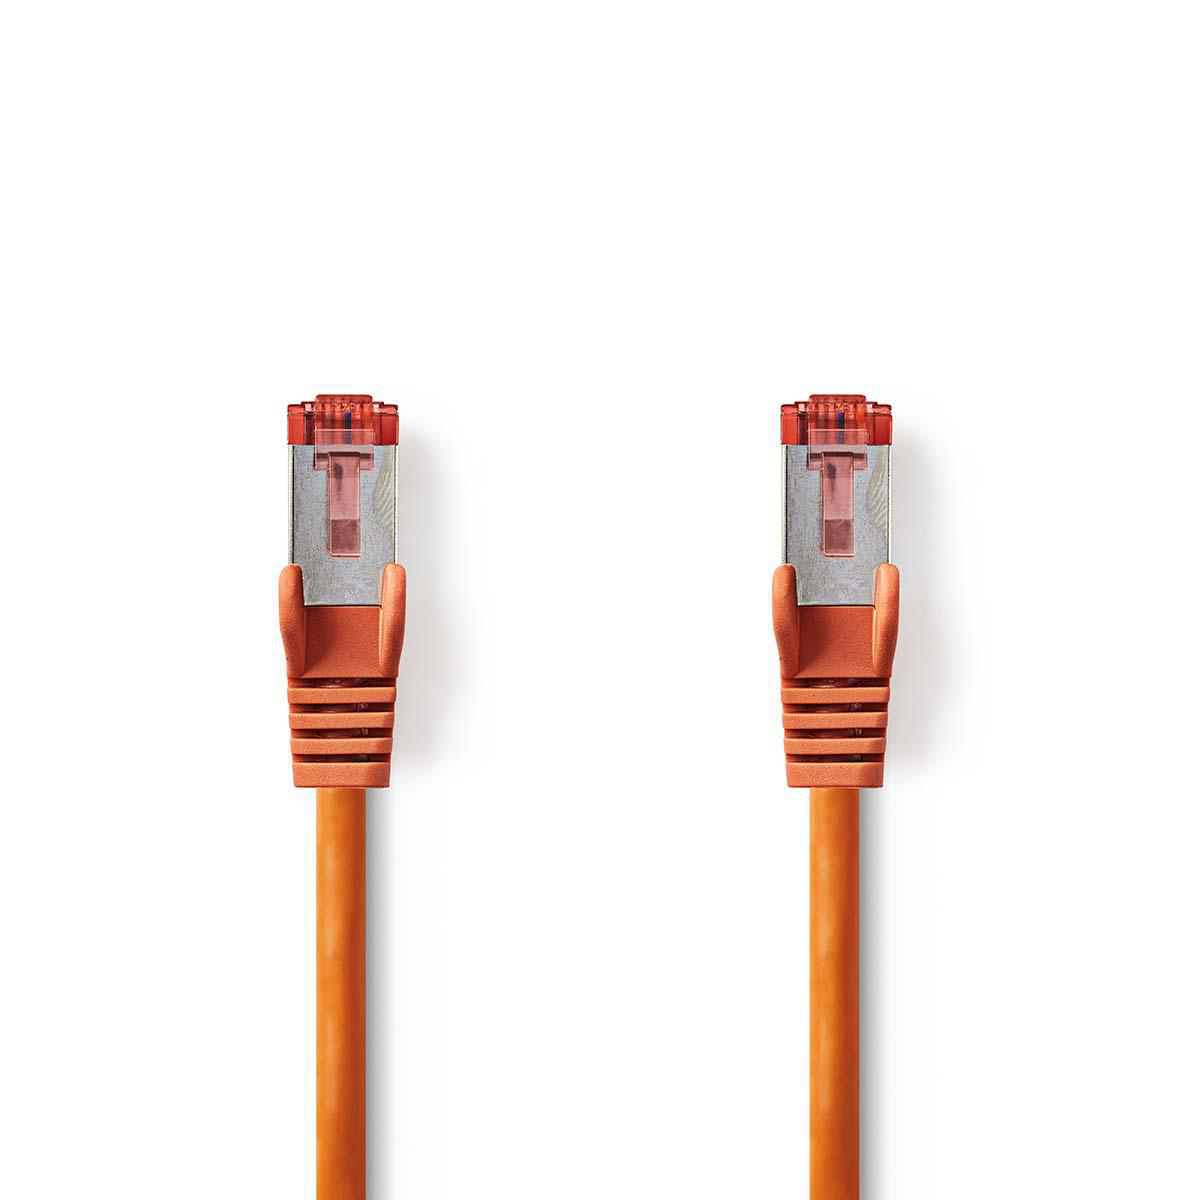 Nedis síťový kabel S/FTP CAT6, zástrčka RJ45 - zástrčka RJ45, 0.5 m, oranžová (CCGP85221OG05)